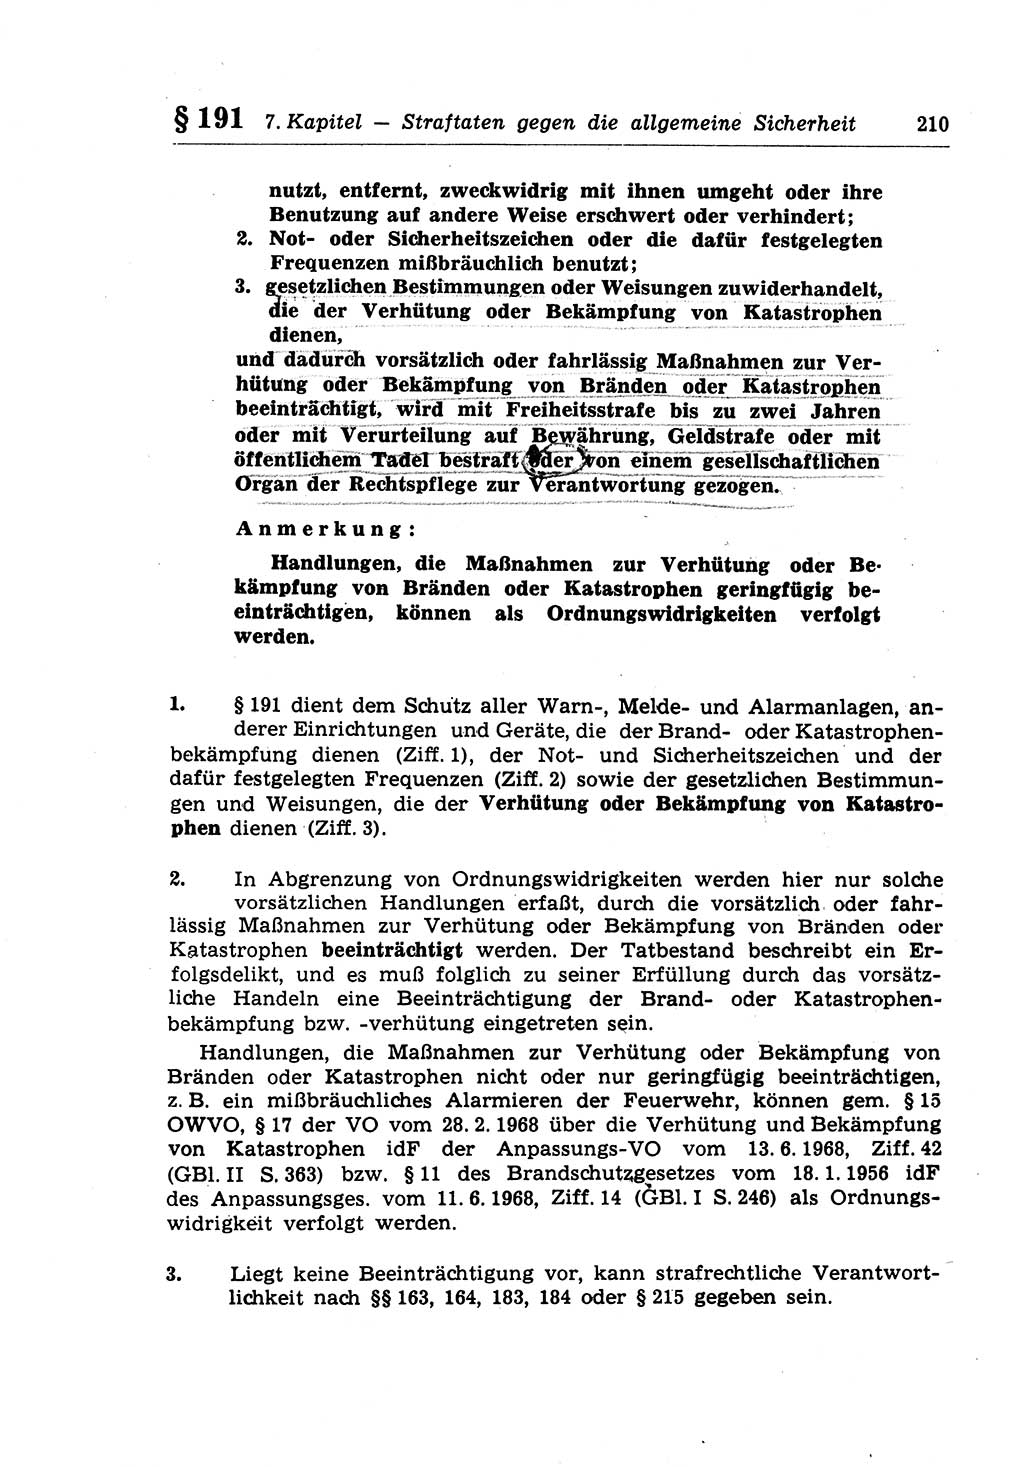 Strafrecht der Deutschen Demokratischen Republik (DDR), Lehrkommentar zum Strafgesetzbuch (StGB), Besonderer Teil 1970, Seite 210 (Strafr. DDR Lehrkomm. StGB BT 1970, S. 210)